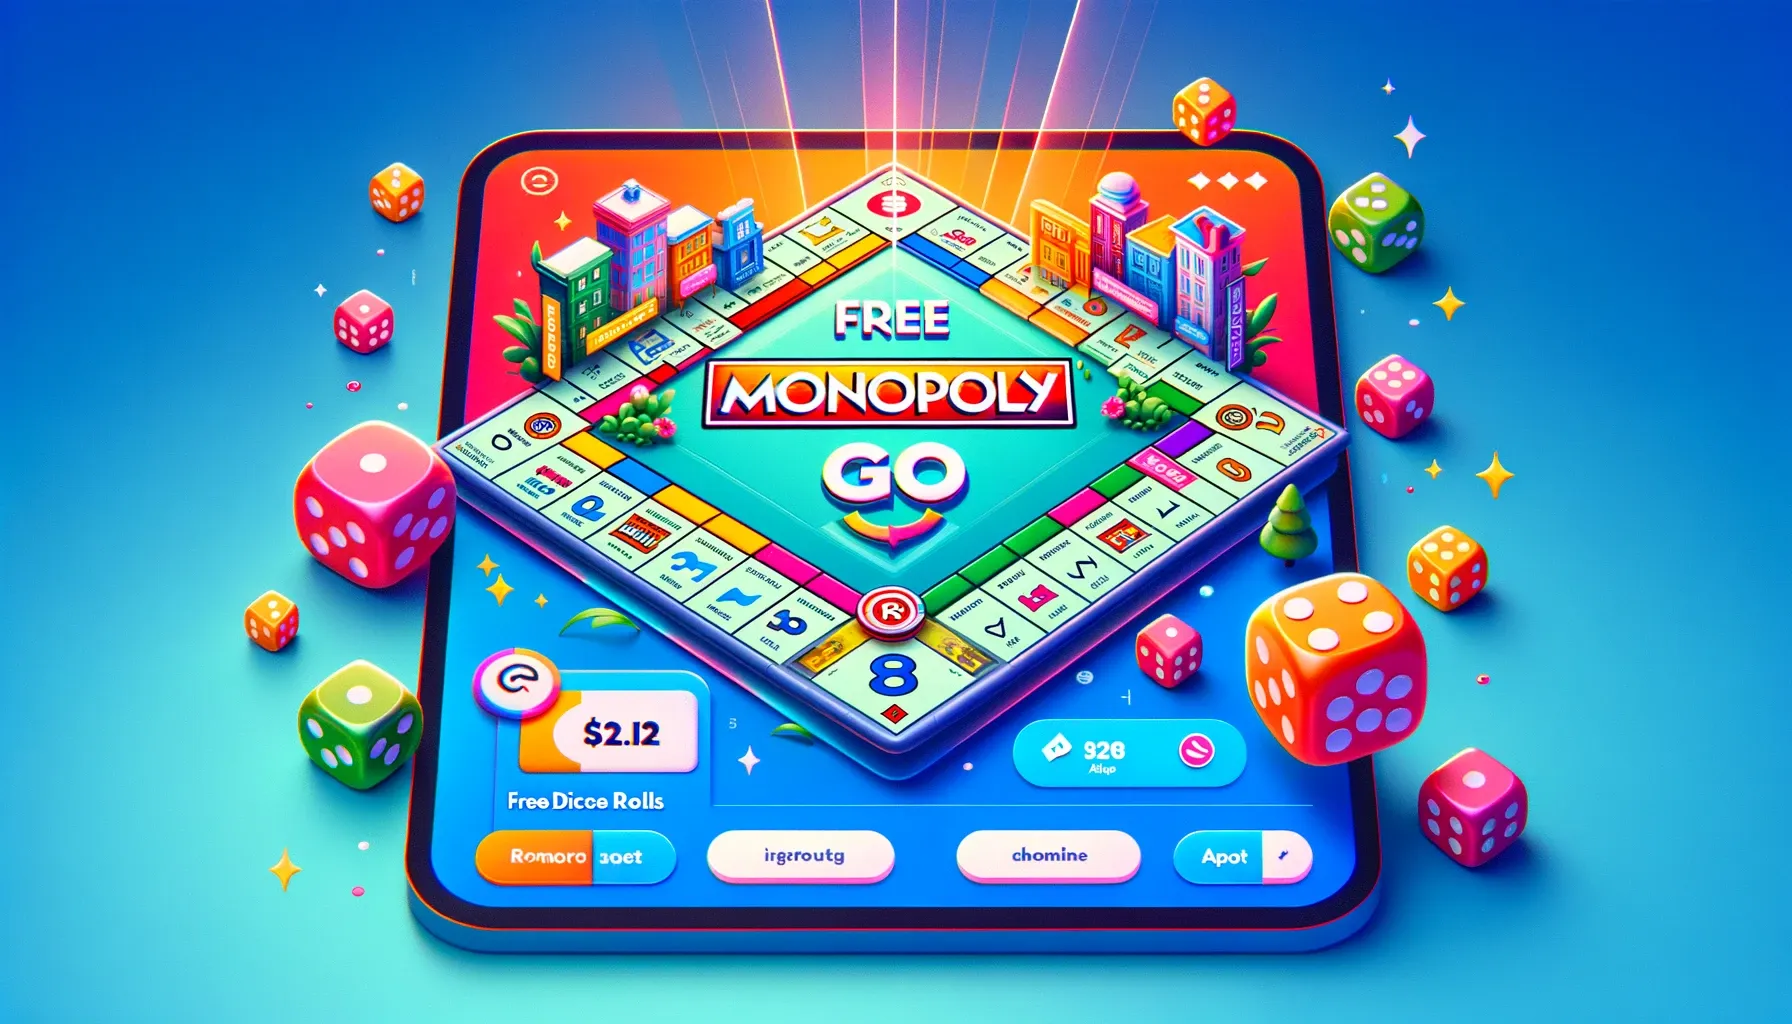 Monopoly GO Free Dice Rolls